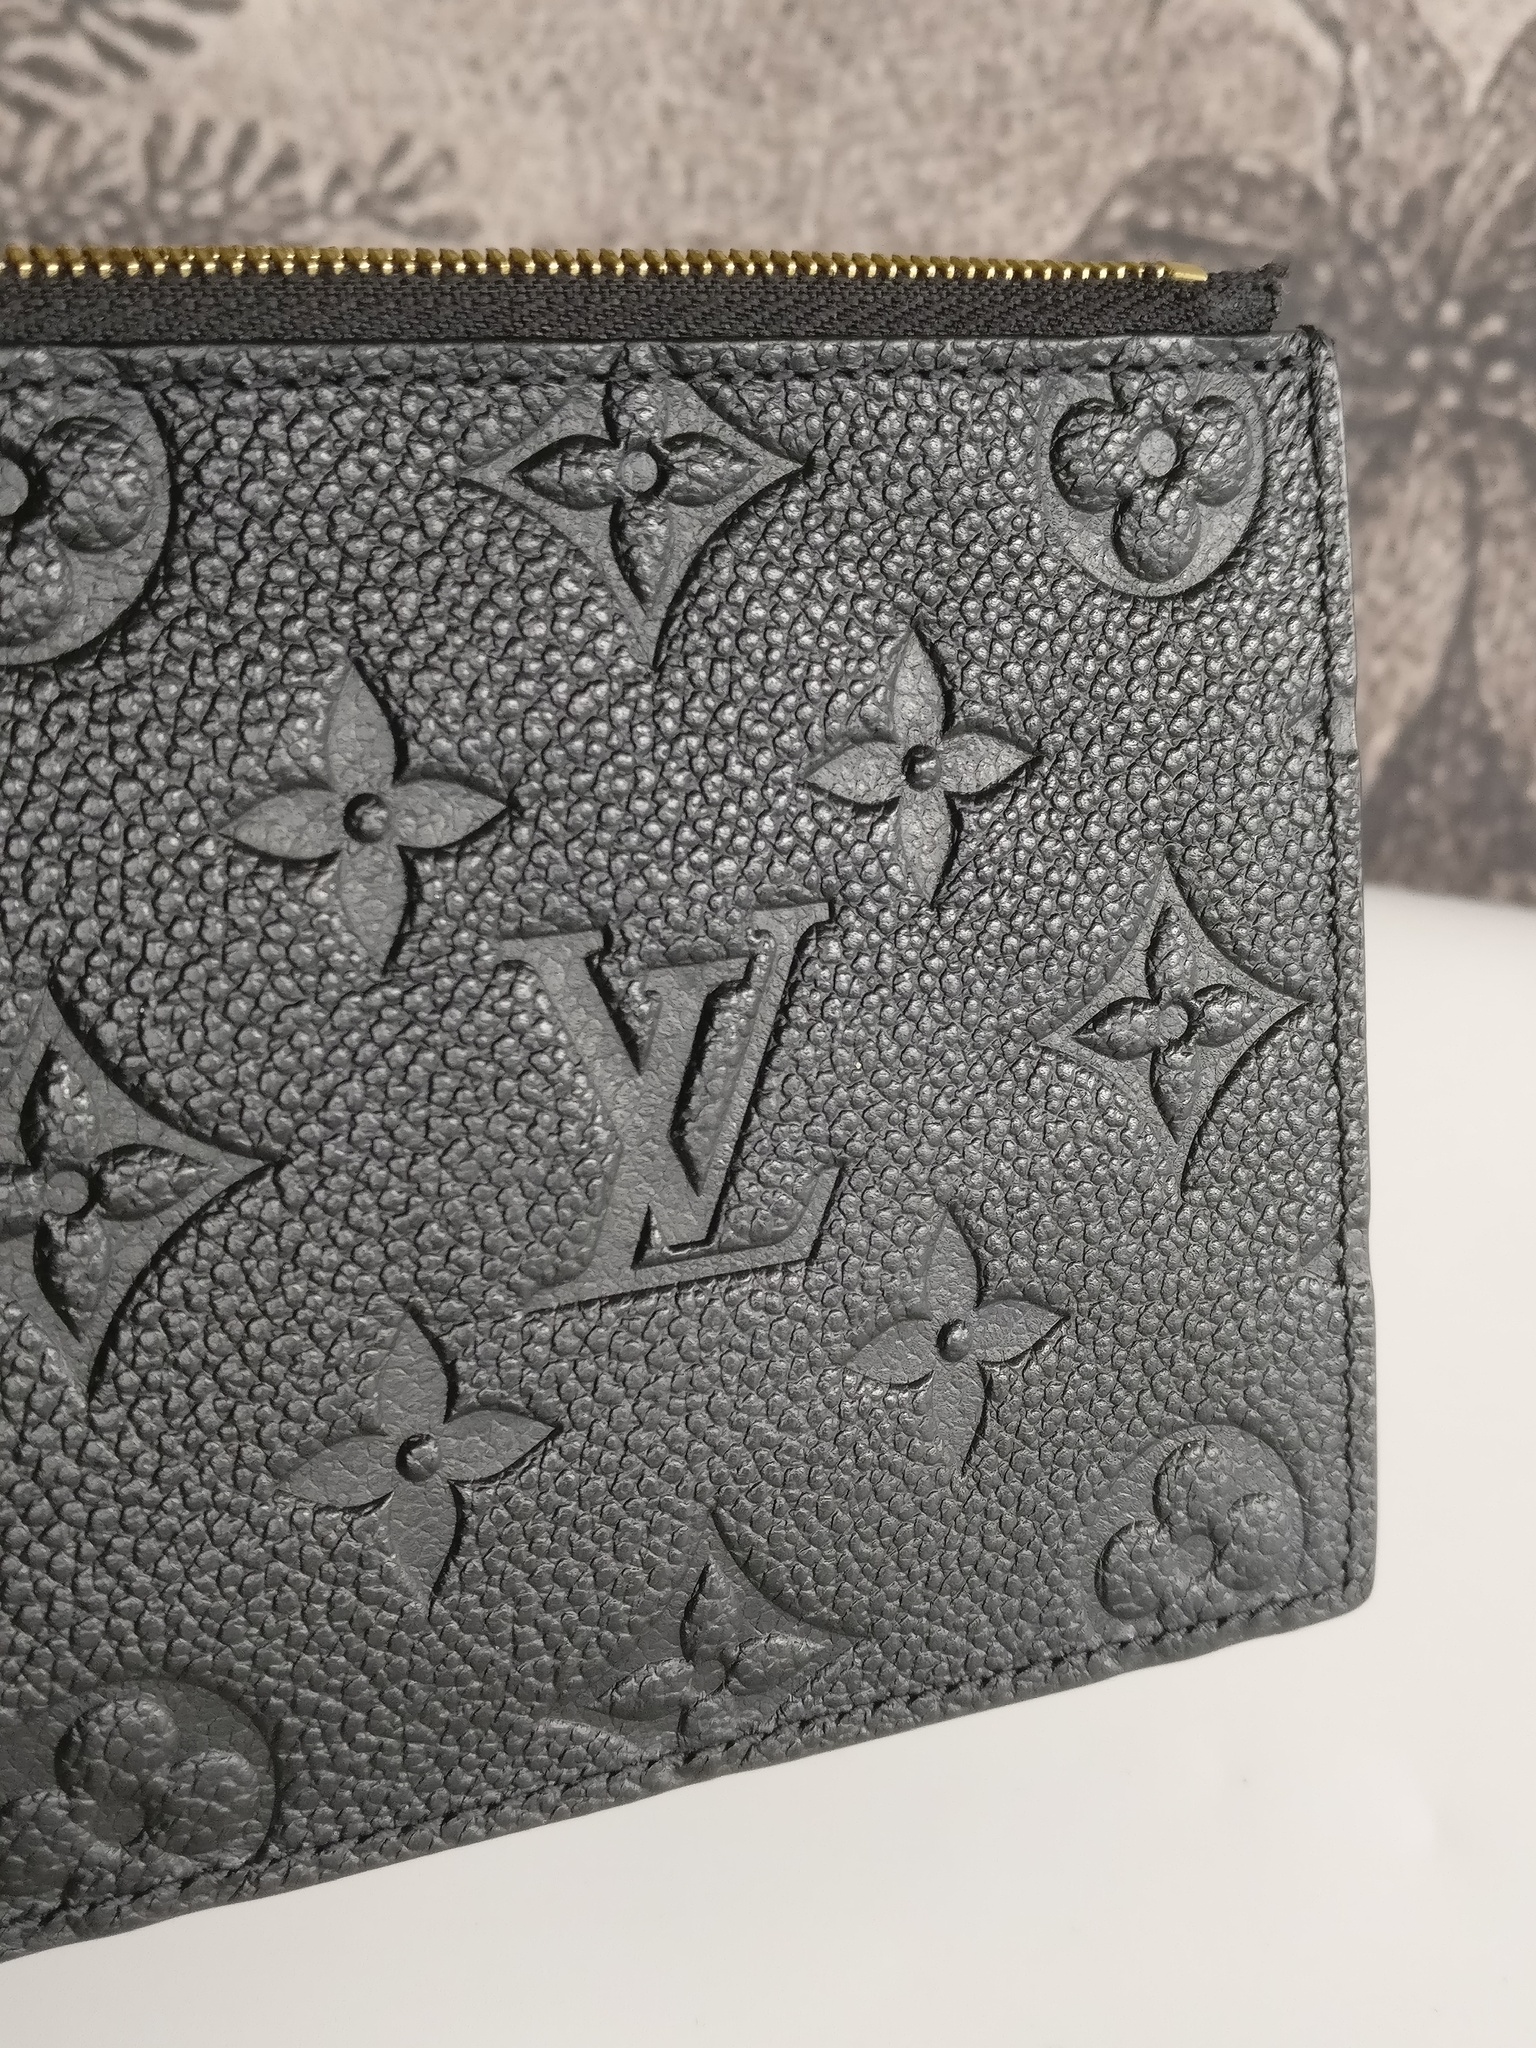 Louis Vuitton zip pouch Felicie